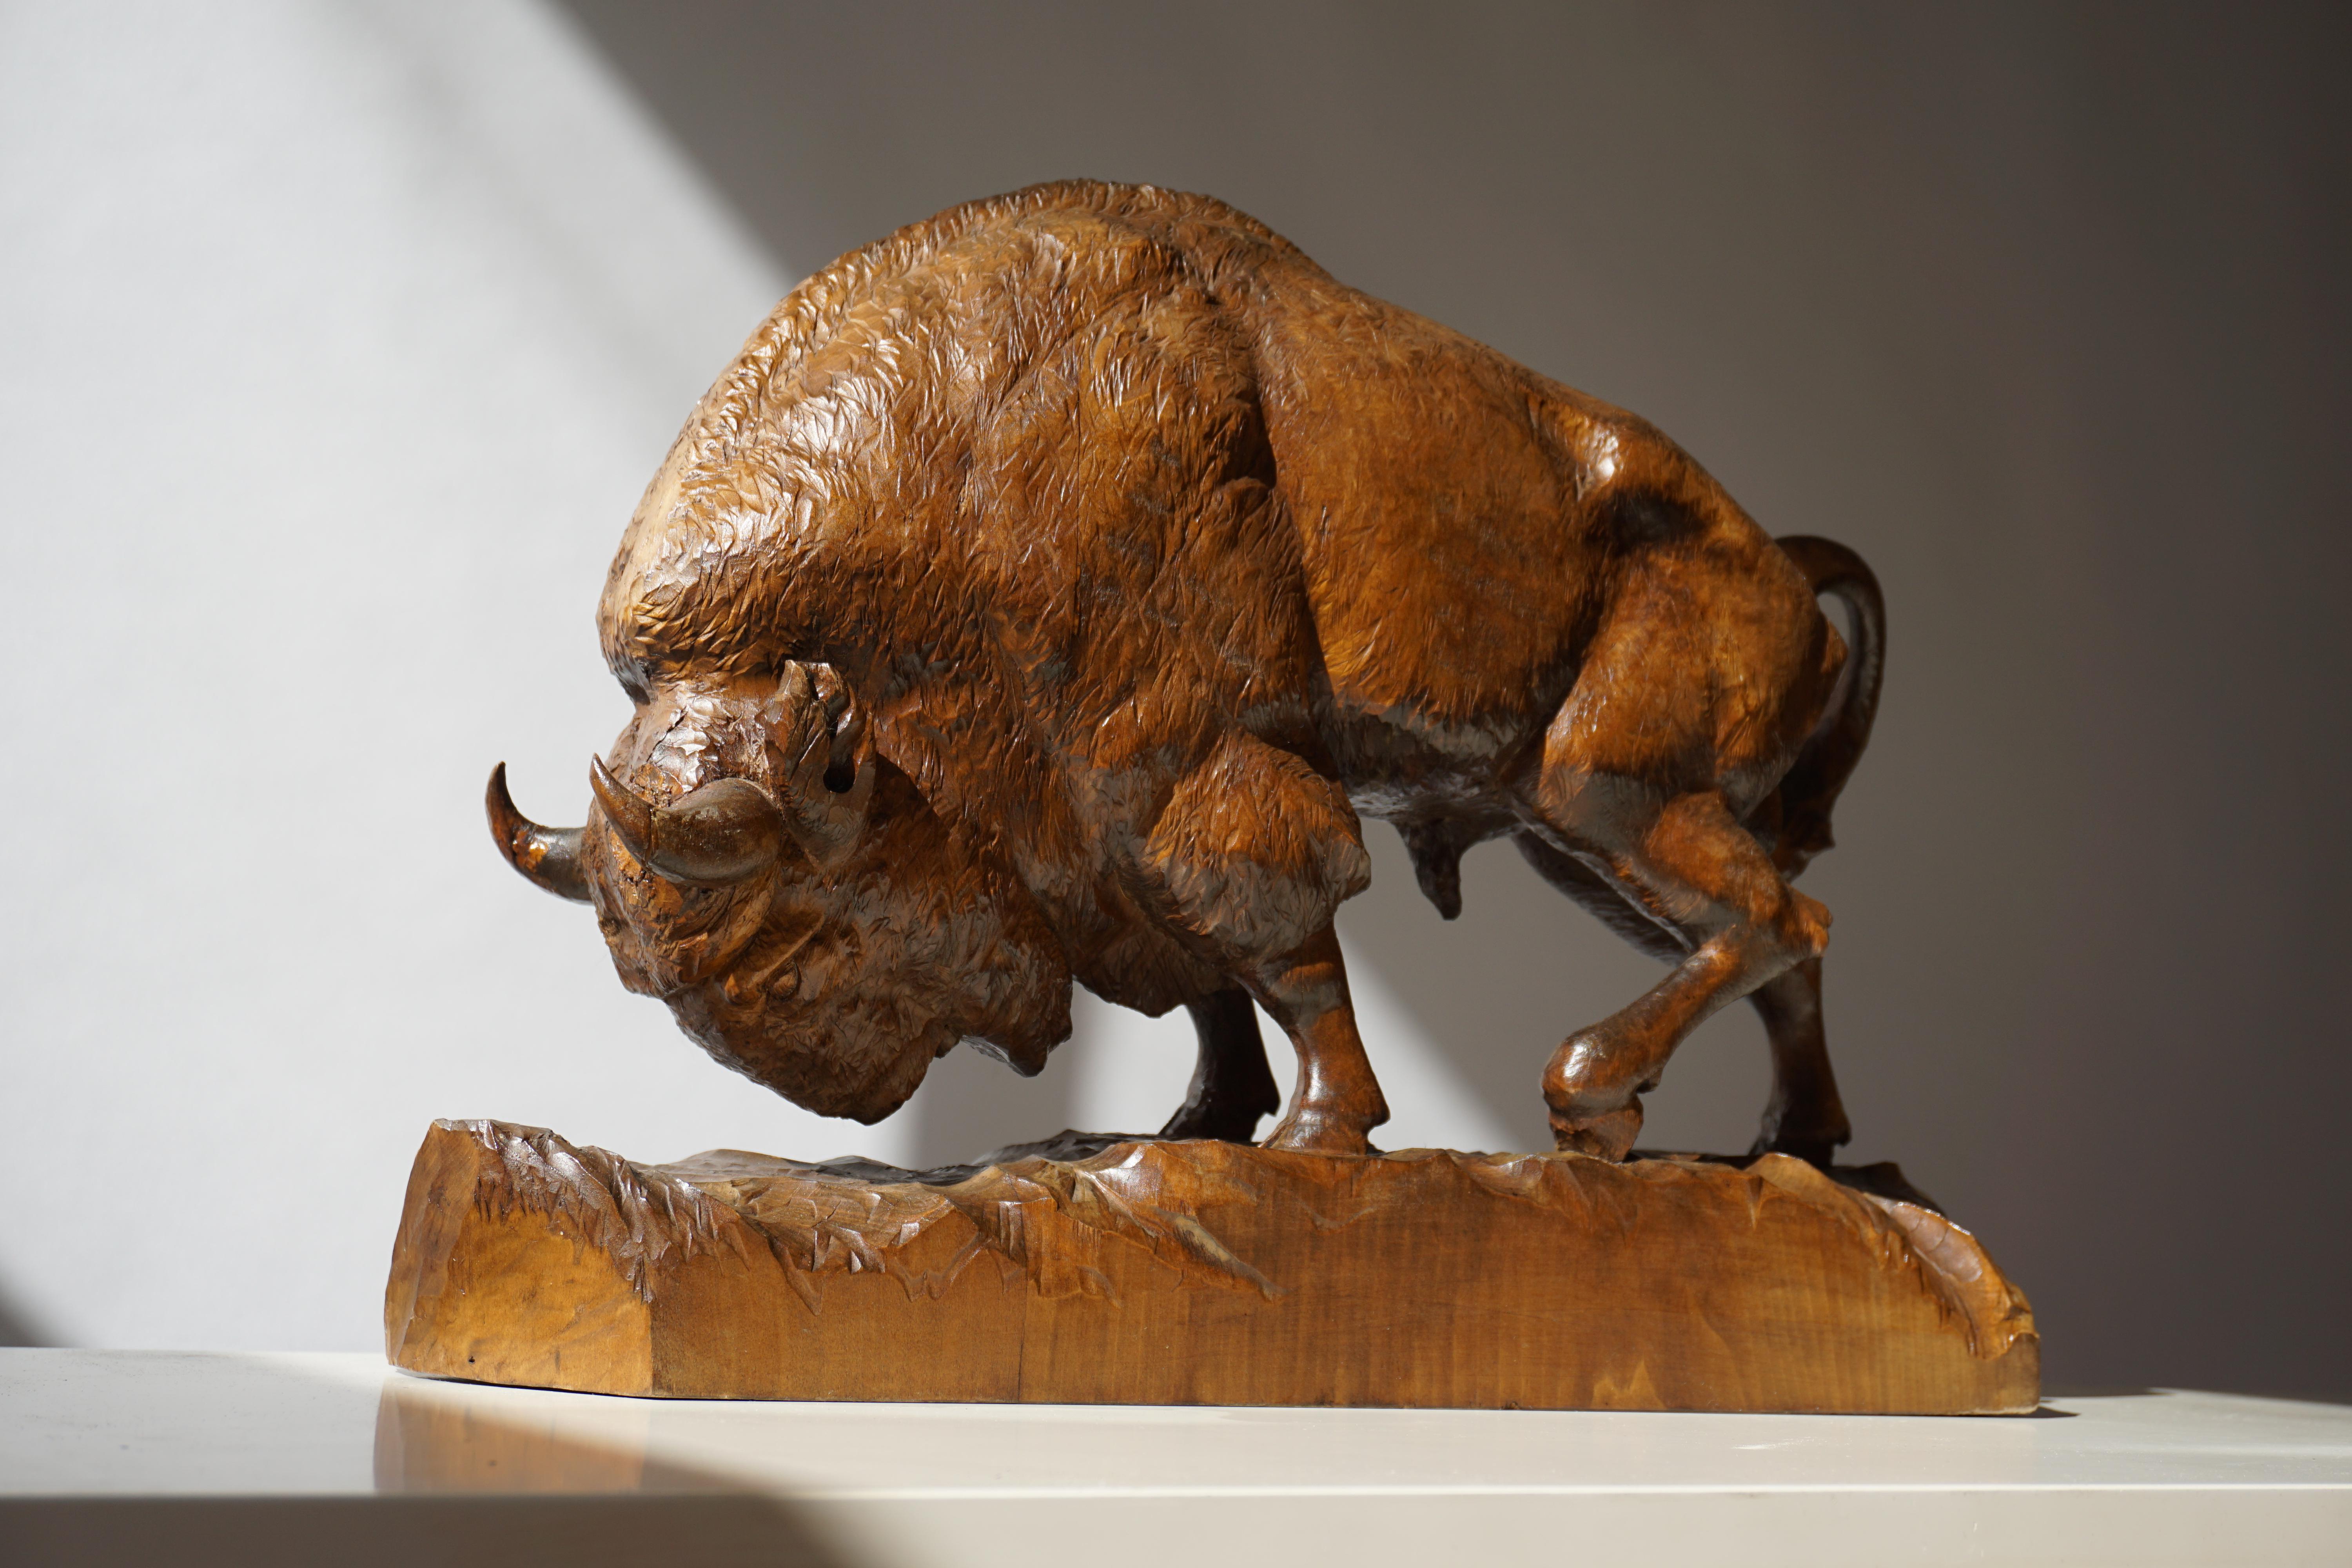 Bison sculpture in wood.
Measures: Height 35 cm, width 50cm, depth 12 cm.
 